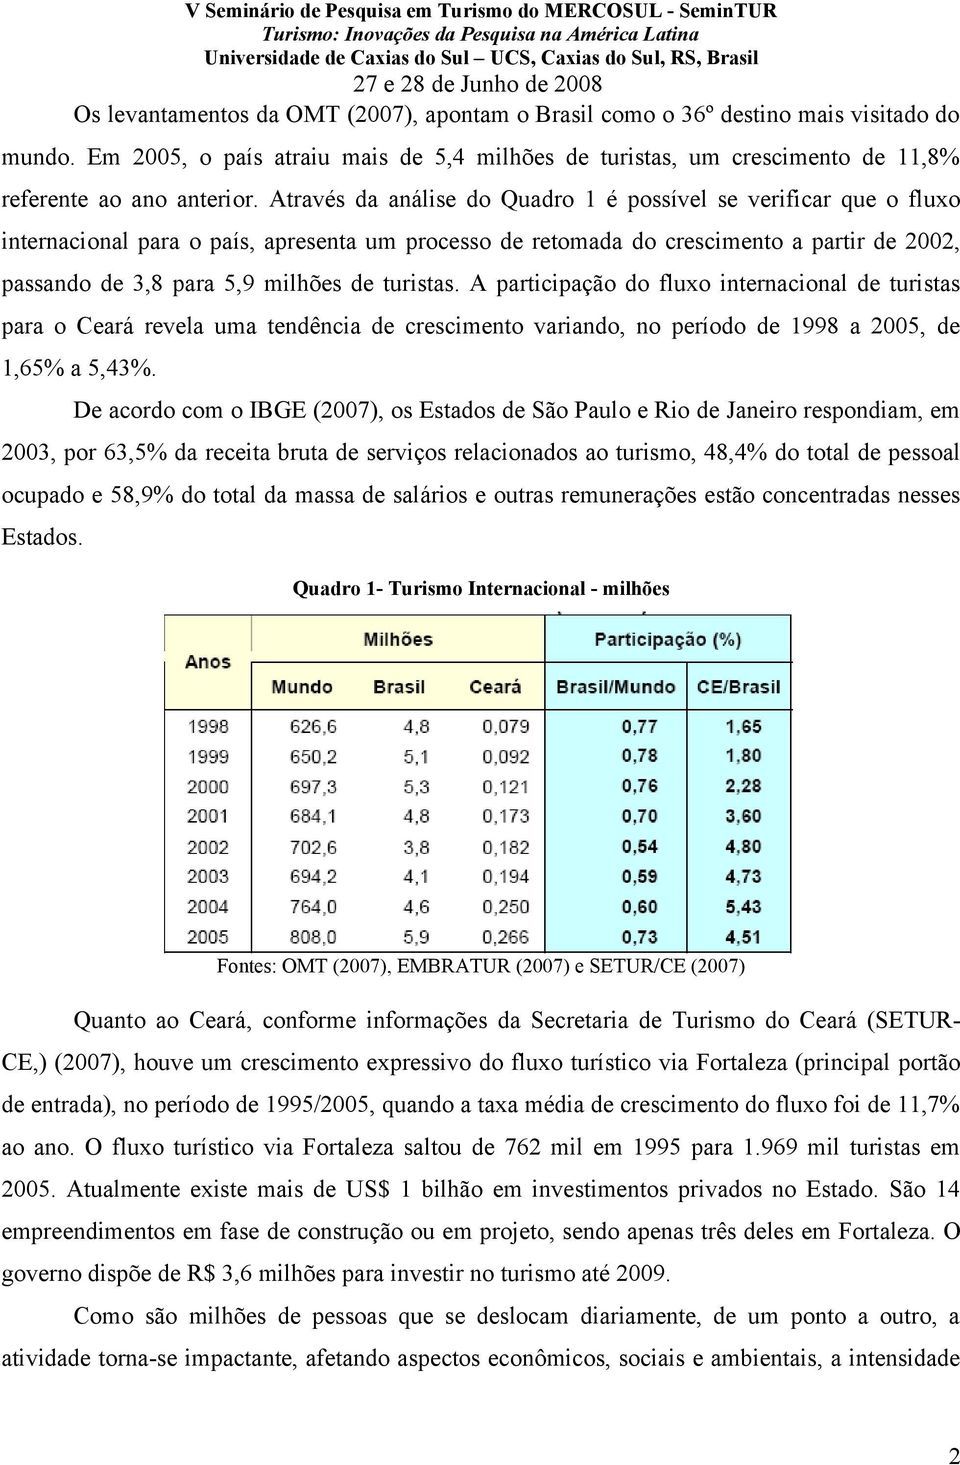 turistas. A participação do fluxo internacional de turistas para o Ceará revela uma tendência de crescimento variando, no período de 1998 a 2005, de 1,65% a 5,43%.